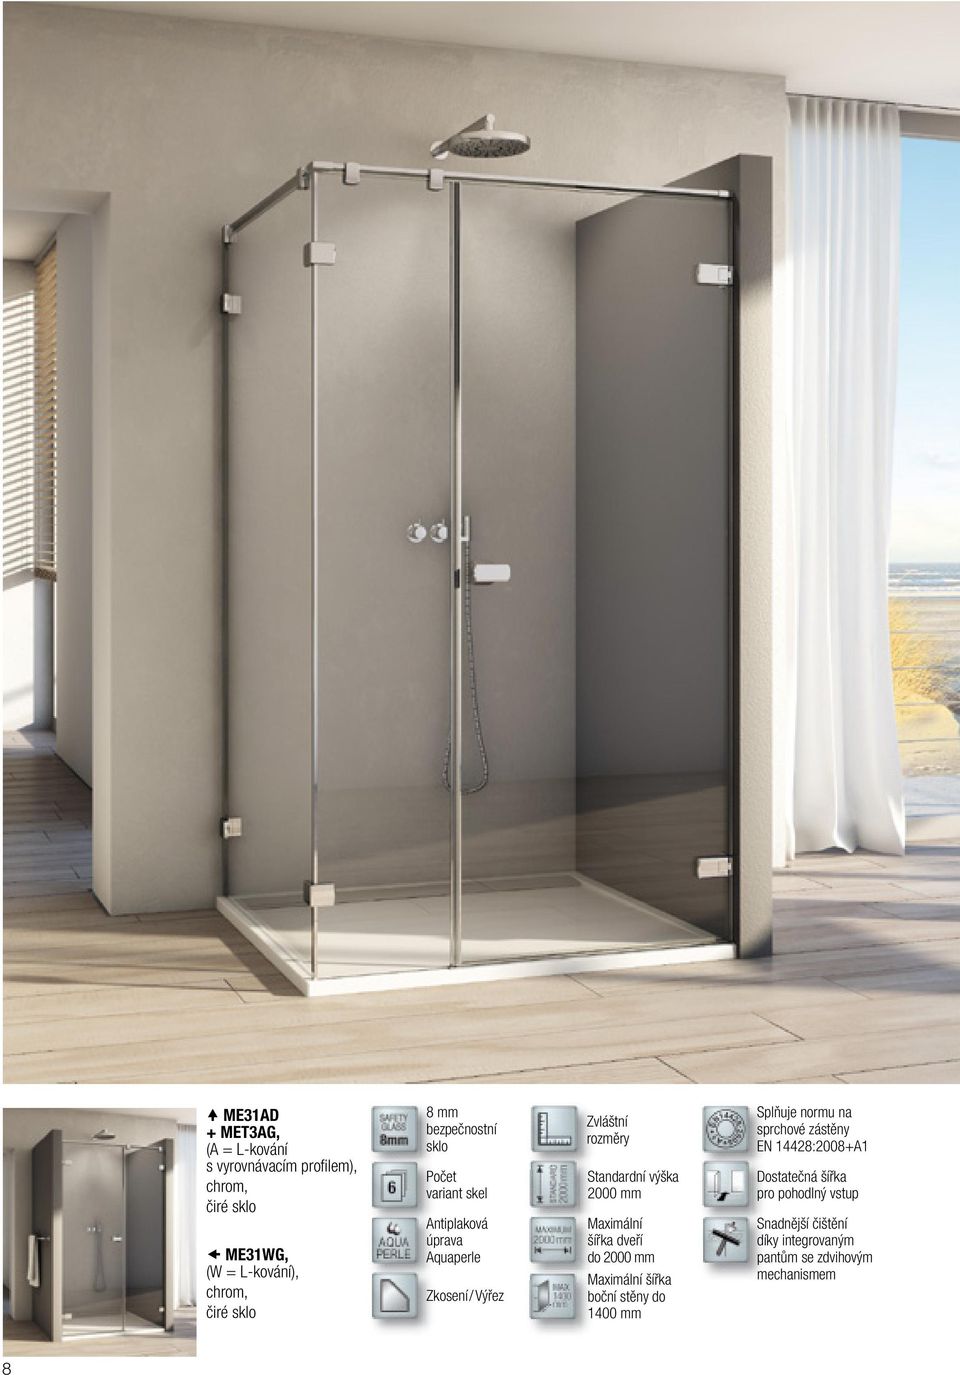 2000 mm Maximální šířka dveří do 2000 mm Maximální šířka boční stěny do 1400 mm Splňuje normu na sprchové zástěny EN